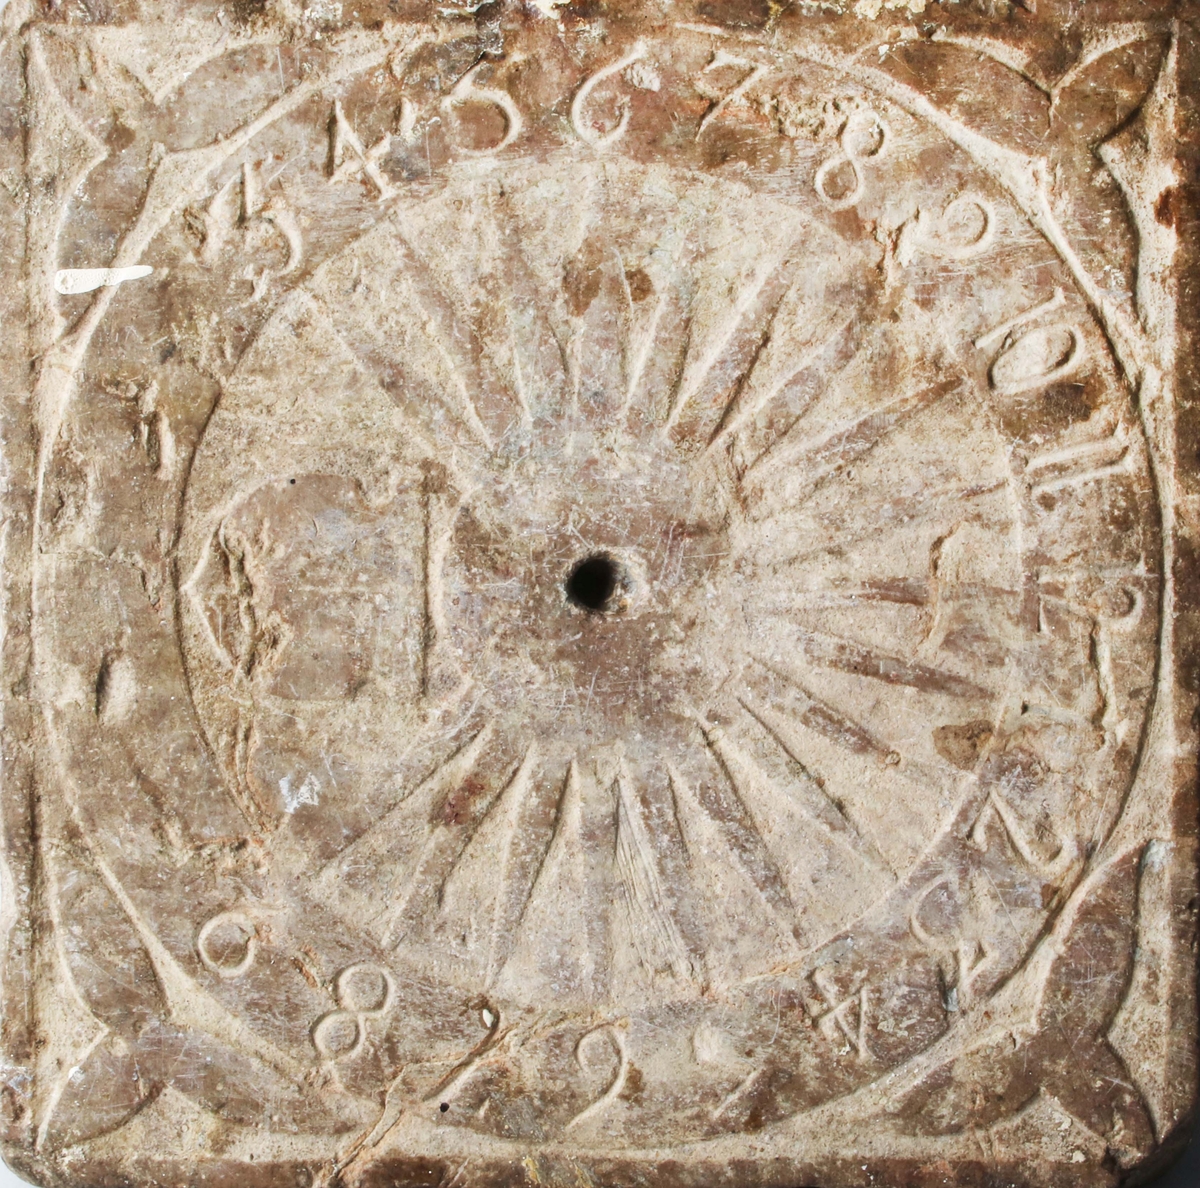 Sten, kvadratisk. Rund sifferkrans med arabiska siffror. Hål för visare i mitten (saknas nu). Från hålet utgår solstrålar. Under hålet vapensköld. I svicklarna treflikiga blad. Troligen tillverkad på 1700-talet.

Funktion: Tidvisare